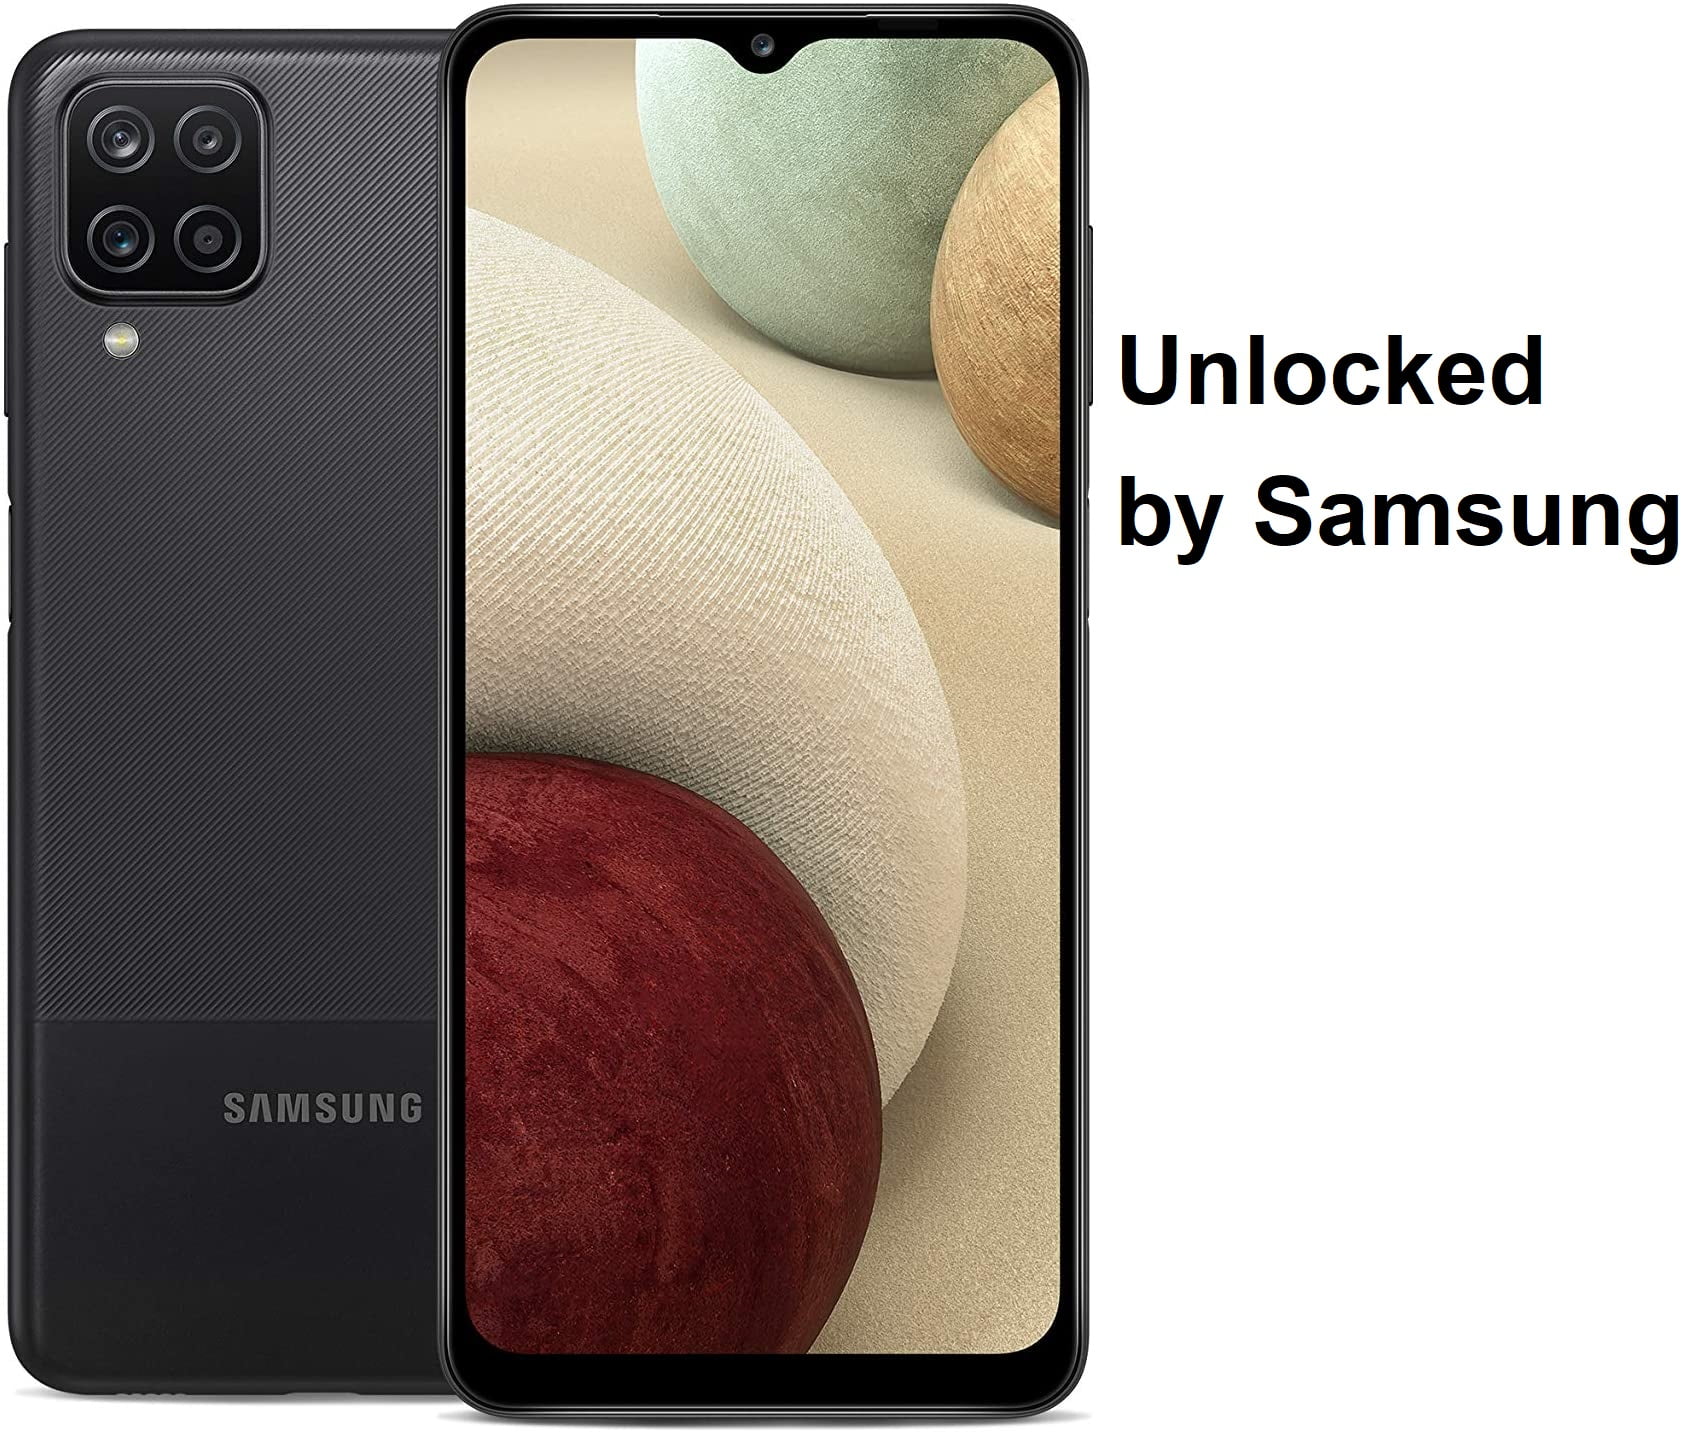 SAMSUNG Galaxy A12 A125U 32GB GSM / CDMA Unlocked Android